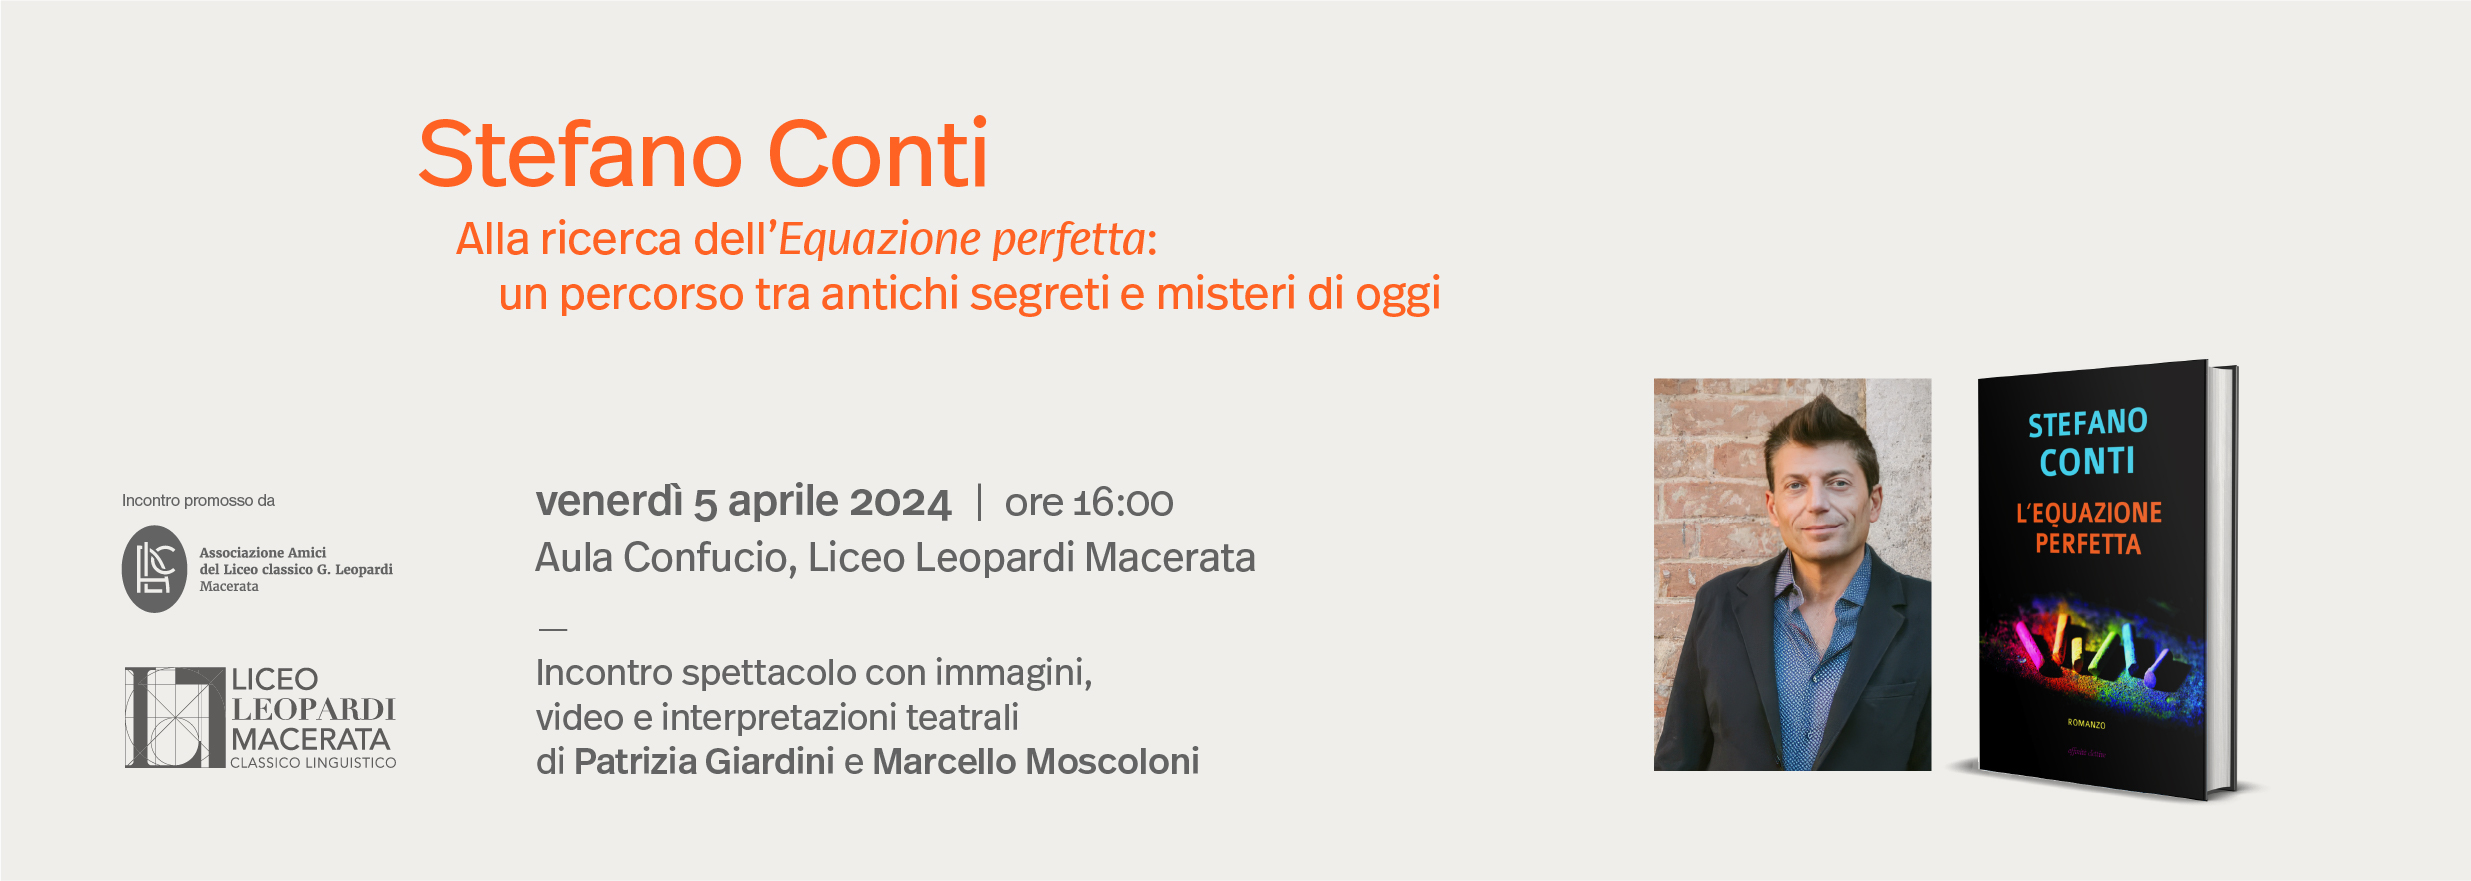 Incontro spettacolo con Stefano Conti - Liceo Statale G. Leopardi Macerata